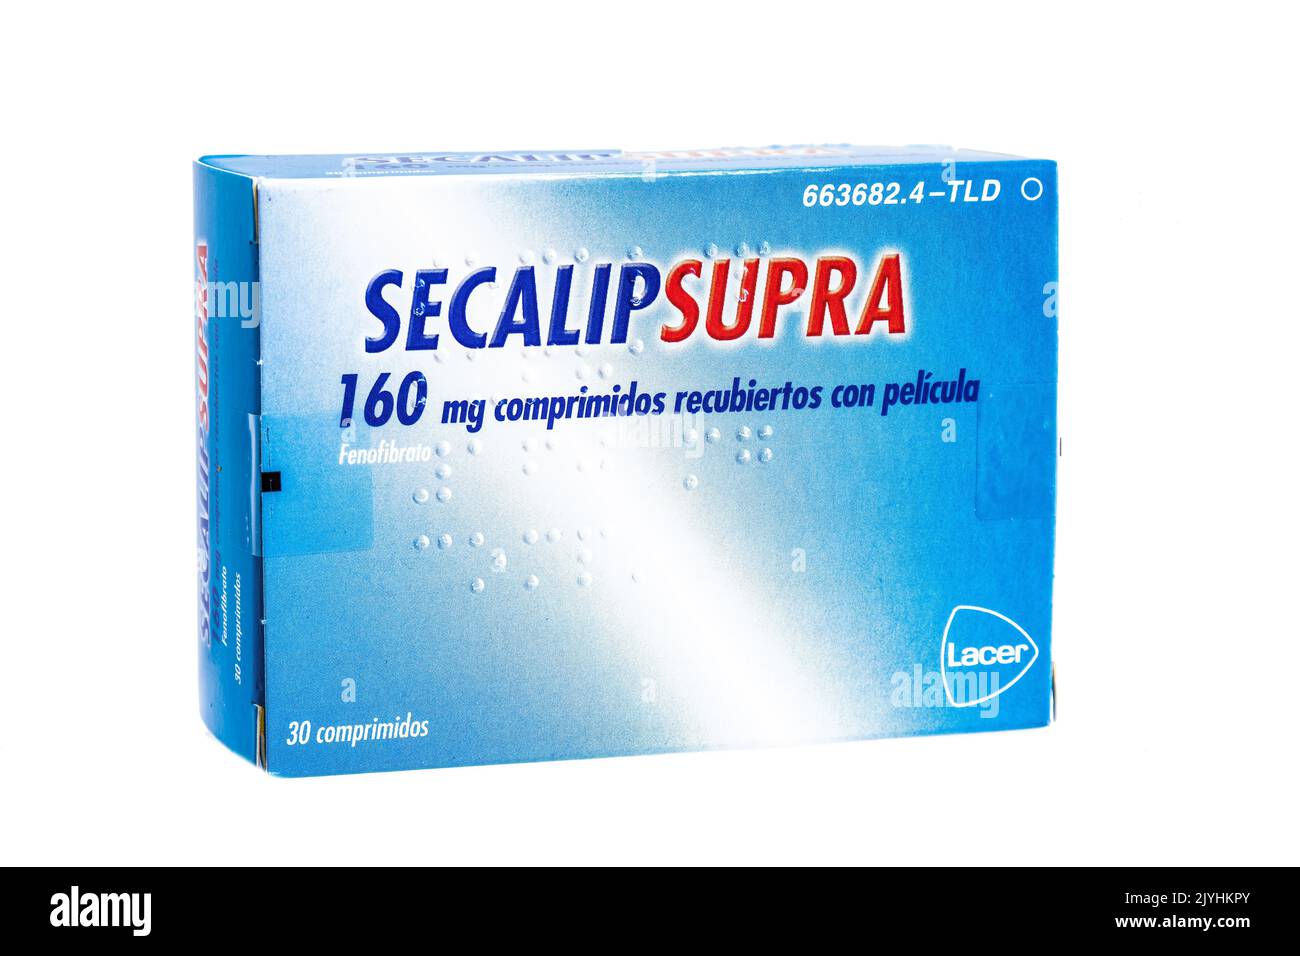 Huelva, Spanien - 8. September 2022: Fenofibrate Marke Secalip Supra, ist ein Medikament der Fibrate-Klasse verwendet, um abnorme Blutfettwerte zu behandeln. Stockfoto